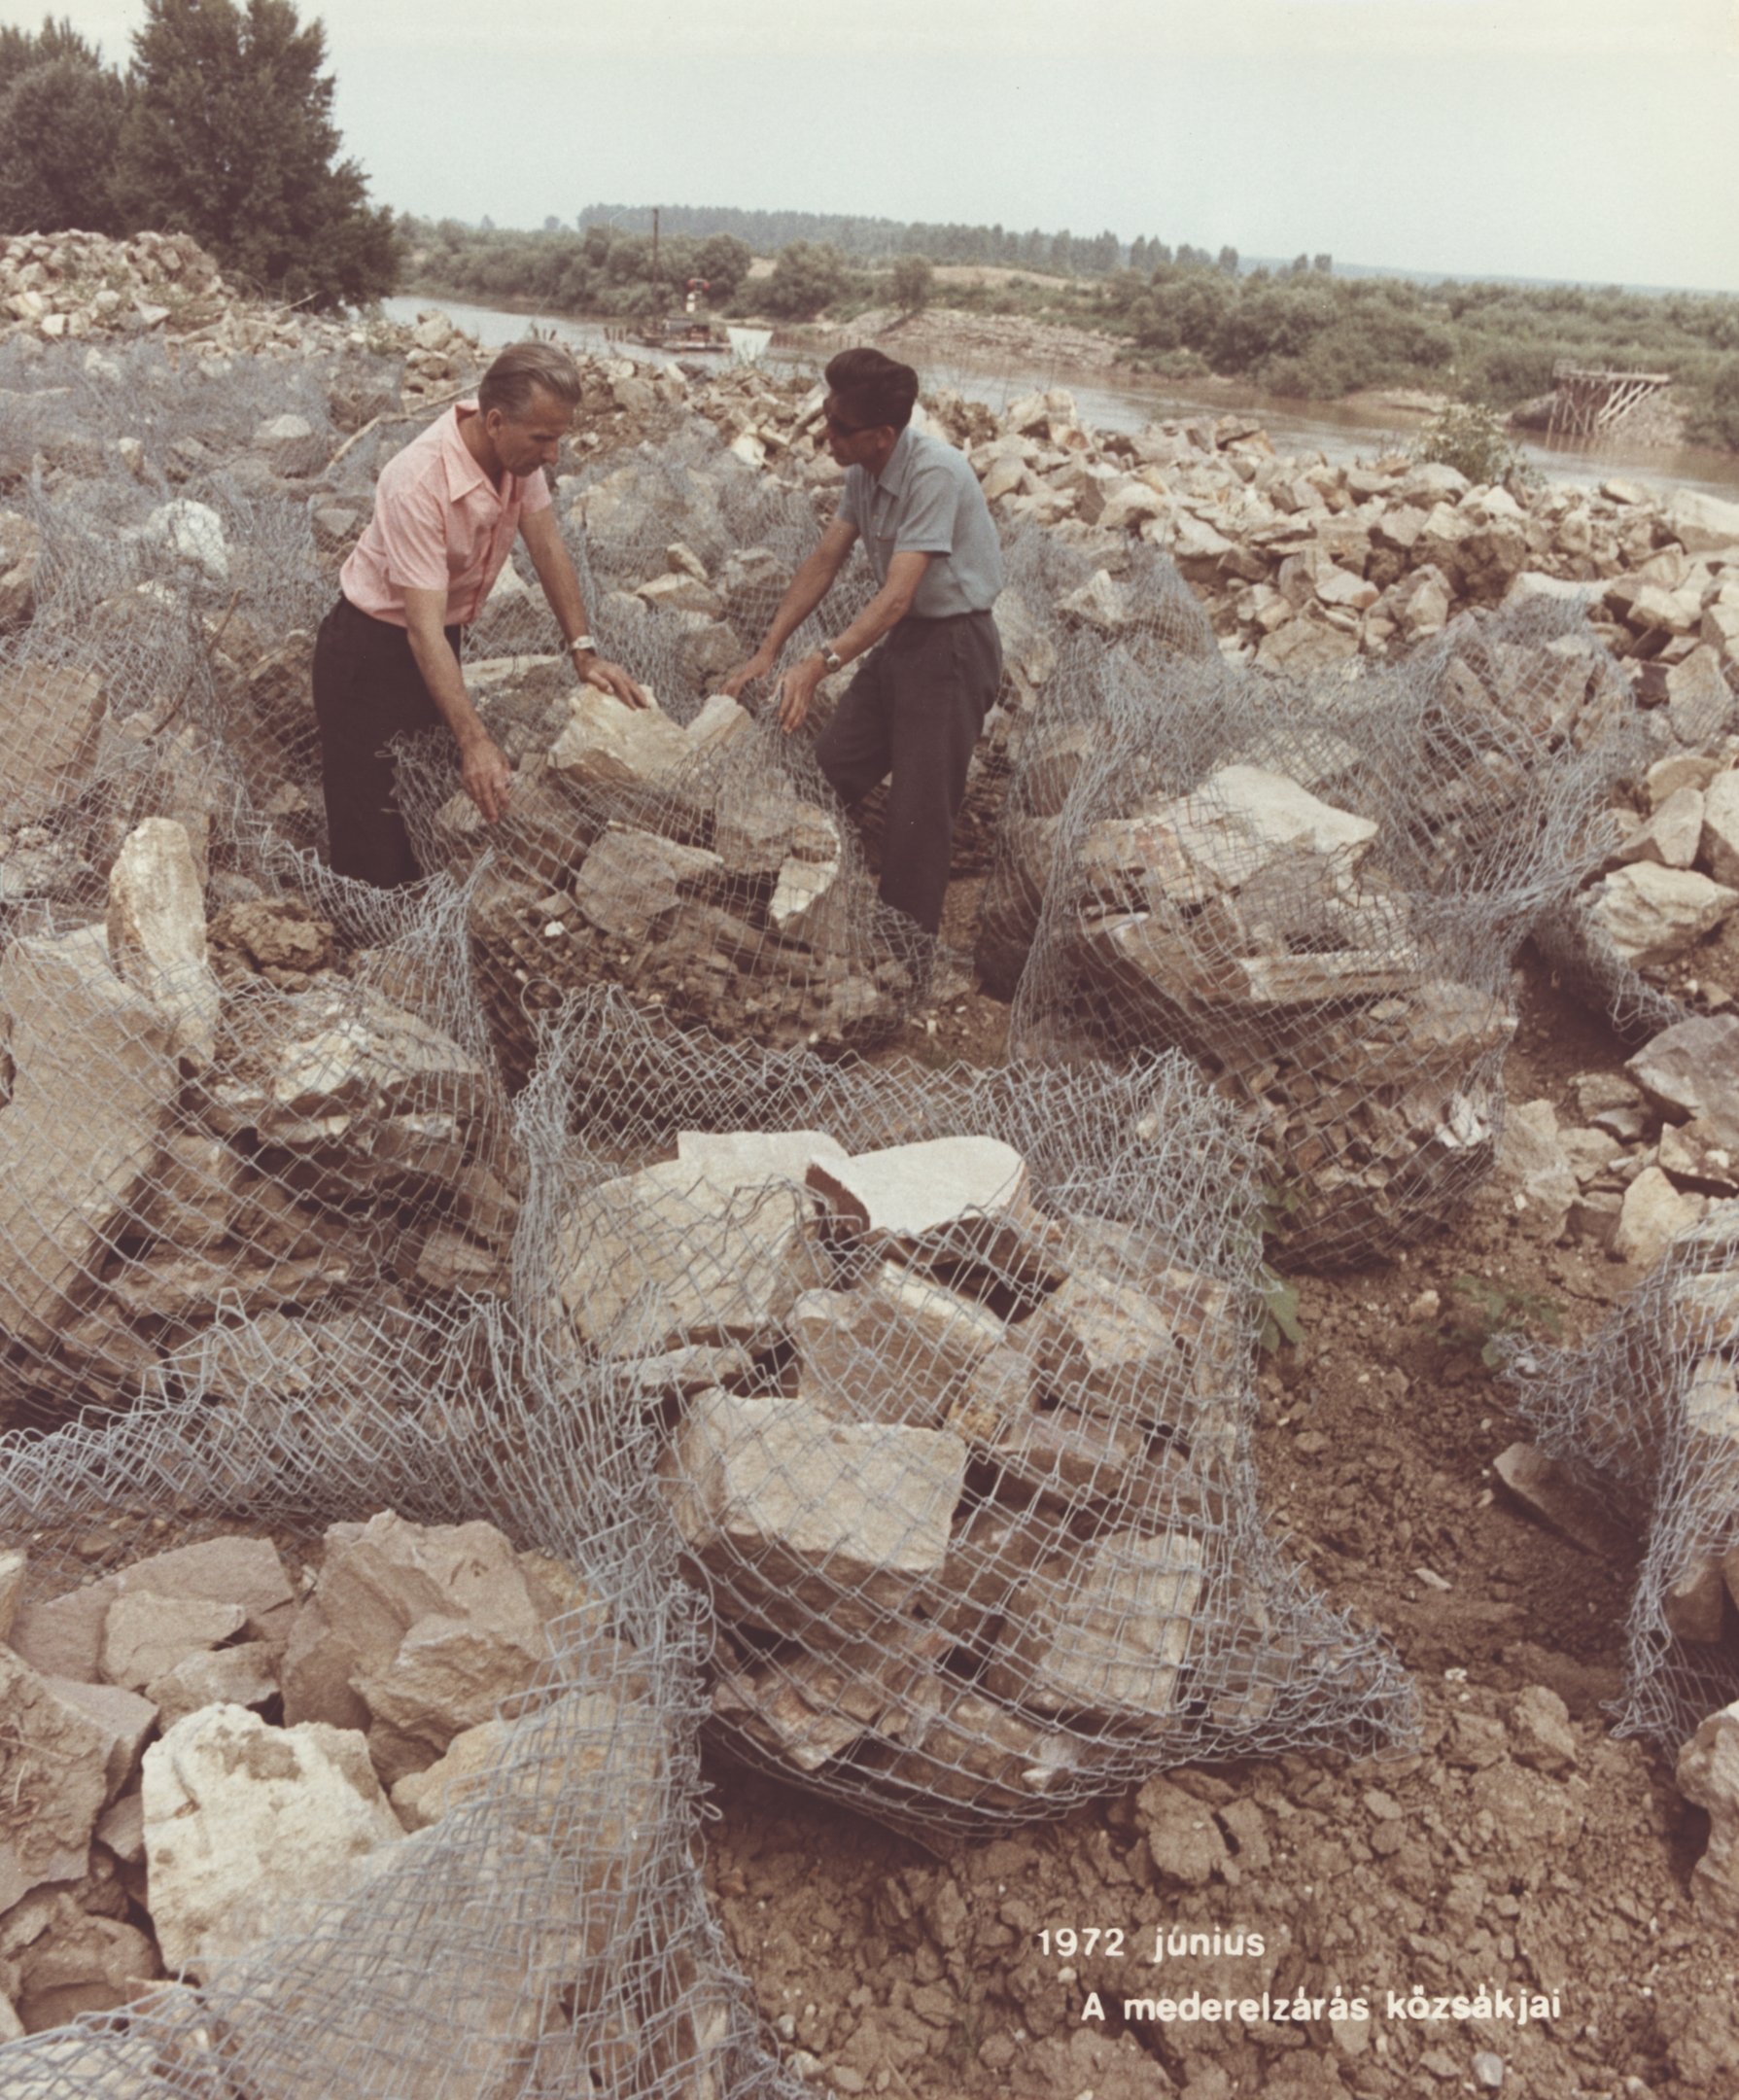 A mederelzárás kőzsákjai, 1972. június (Magyar Környezetvédelmi és Vízügyi Múzeum - Duna Múzeum CC BY-NC-SA)